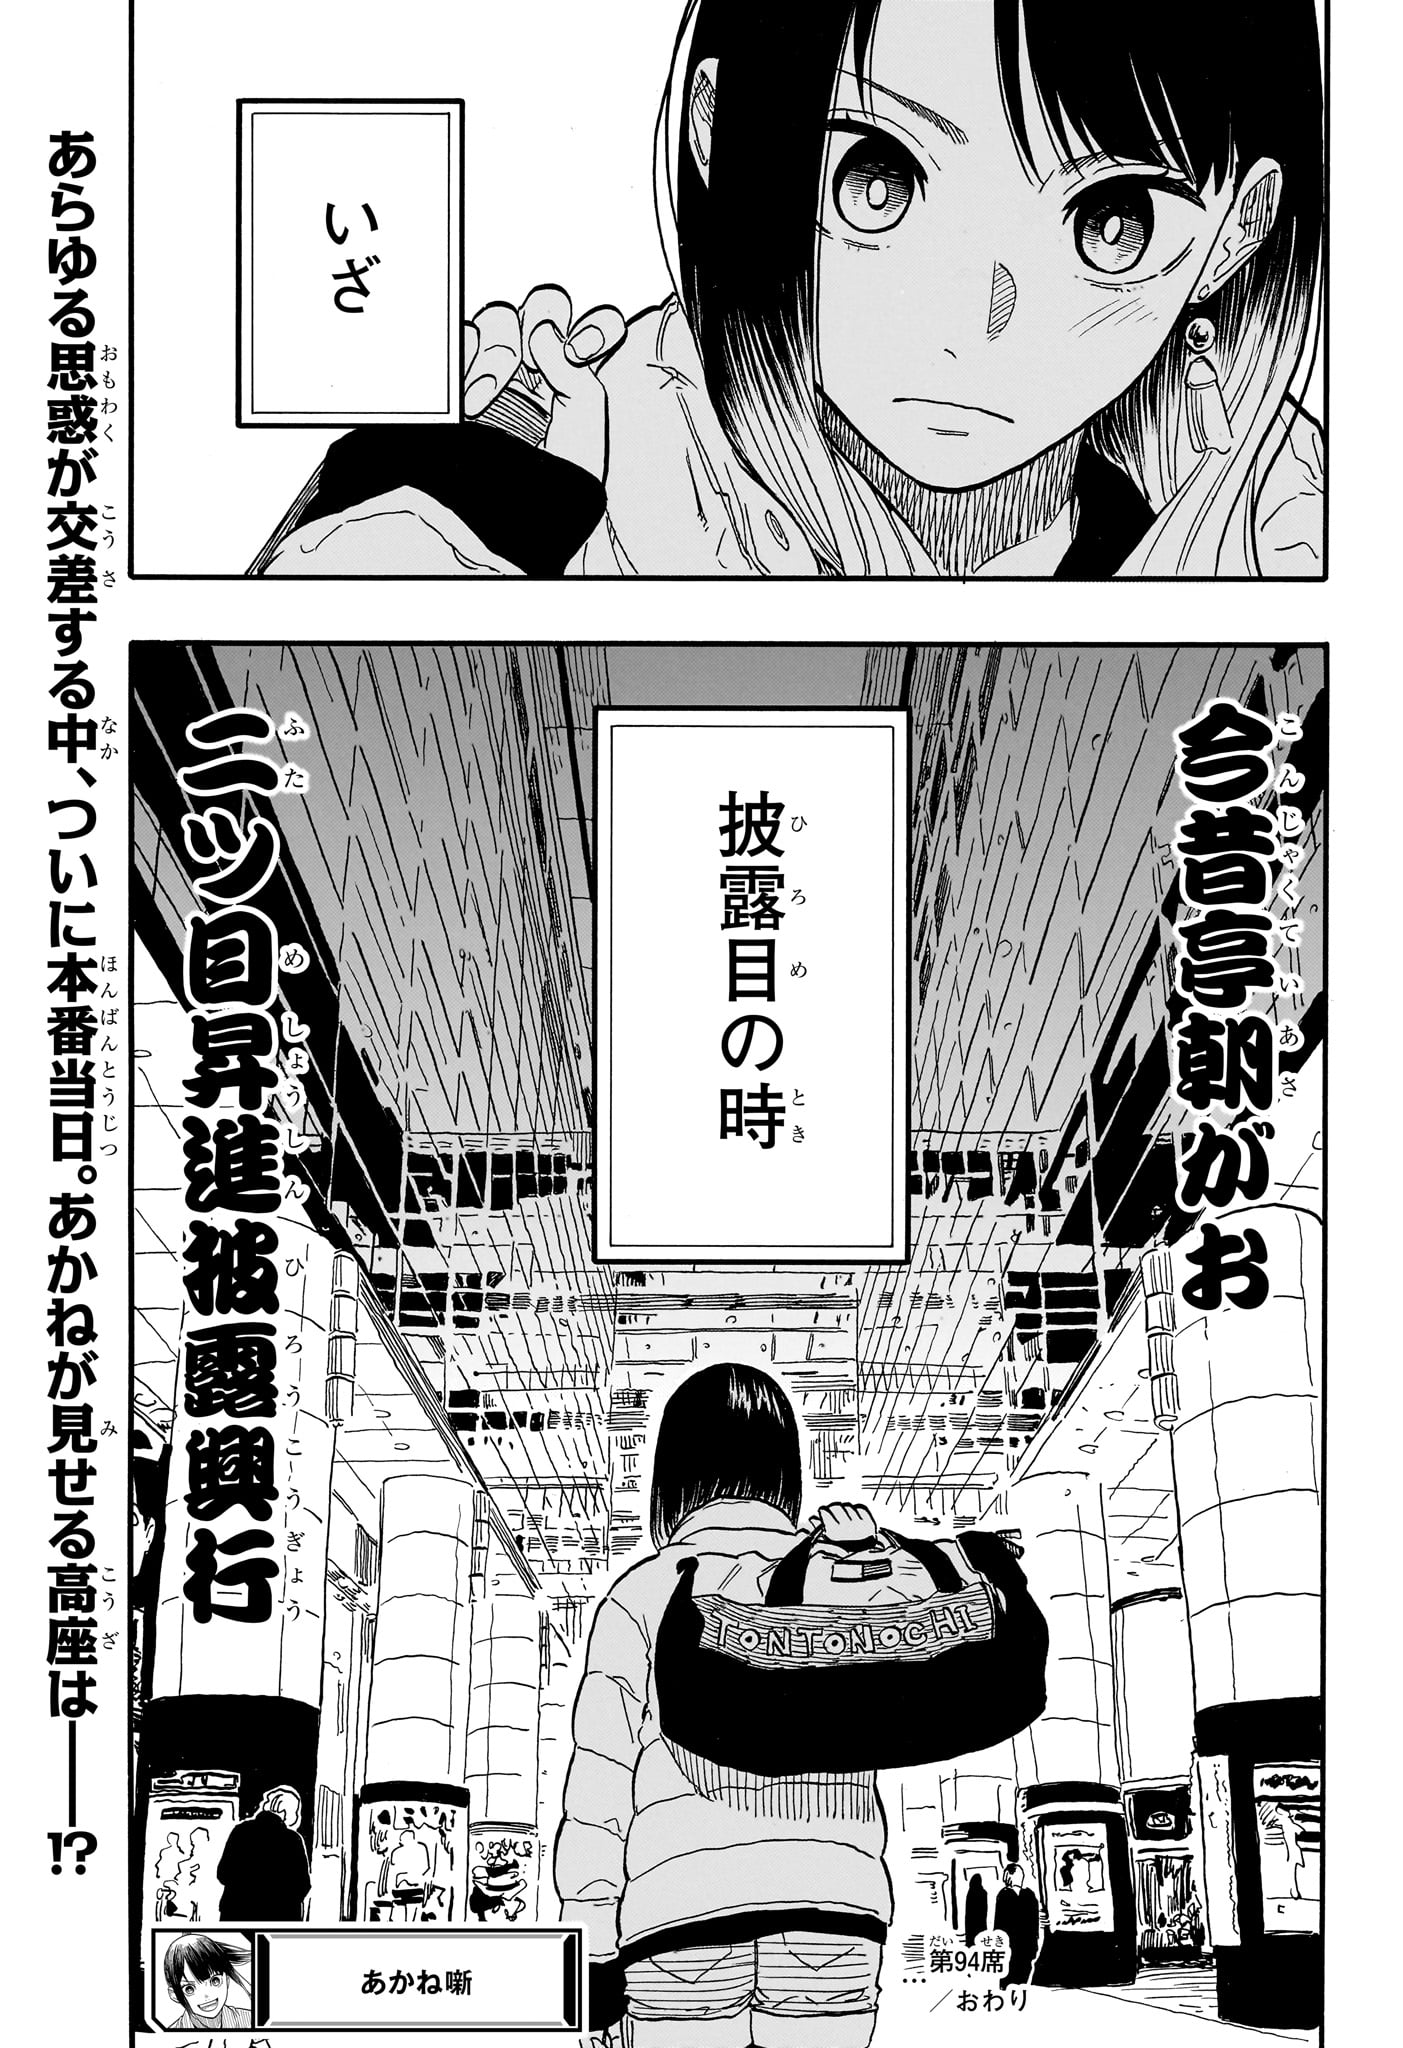 Akane-Banashi - Chapter 94 - Page 21